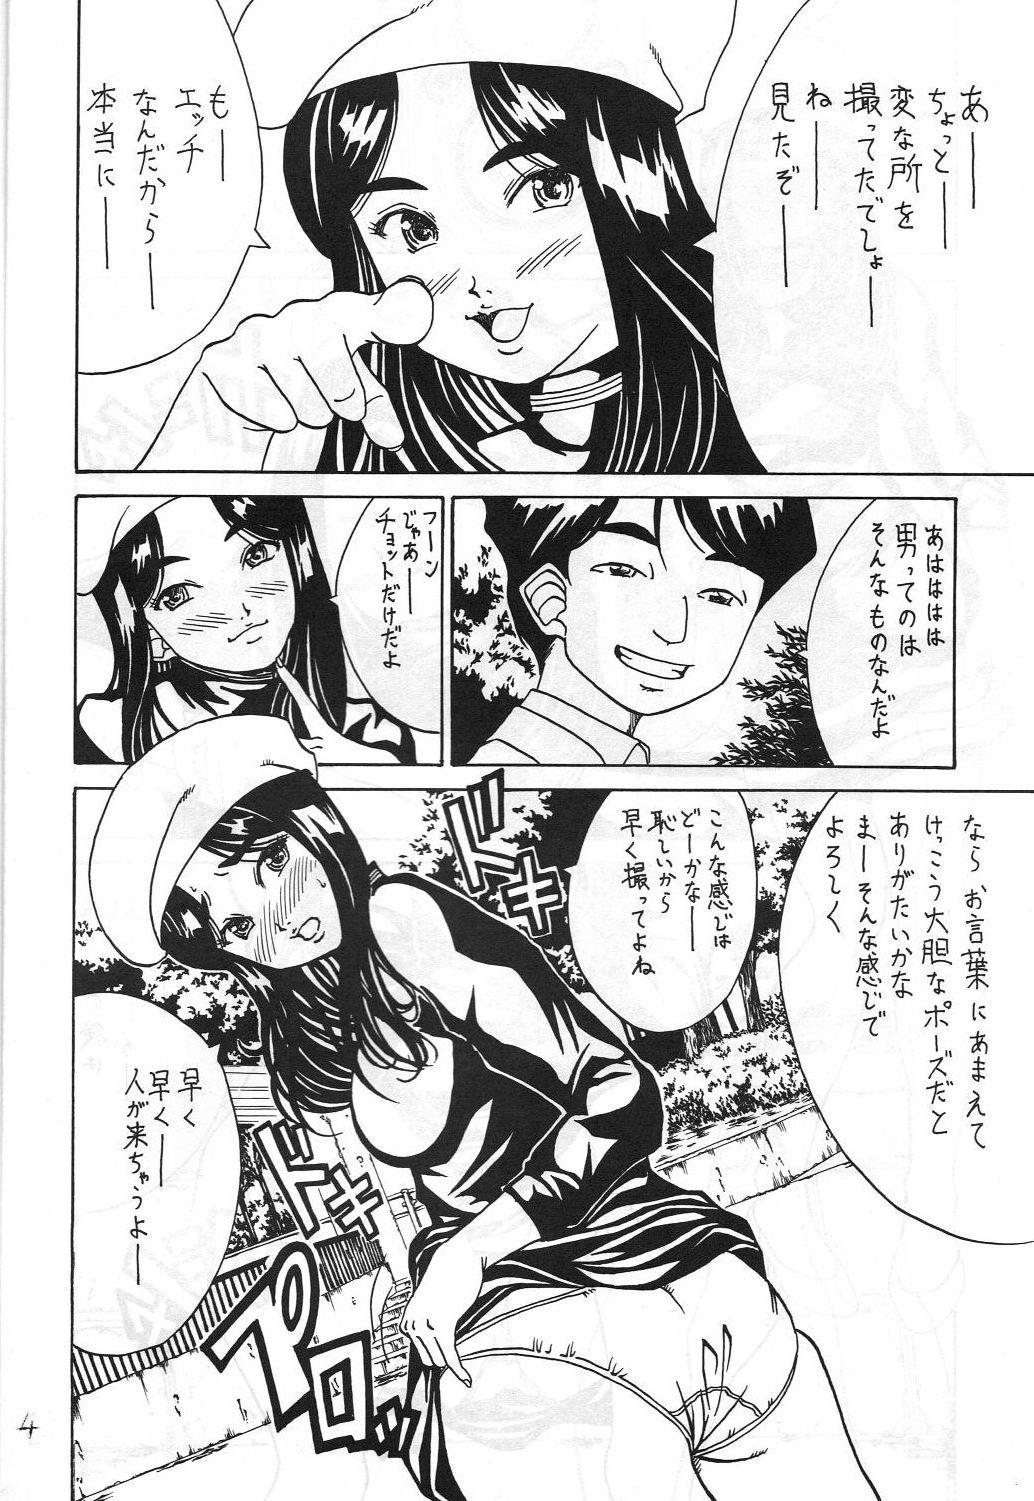 Real Amateur Kikansha ha Ore no Johnson in my life (Mitake) Eanakuoto (Ah! Megami-sama/Ah! My Goddess) - Ah my goddess Porno - Page 5